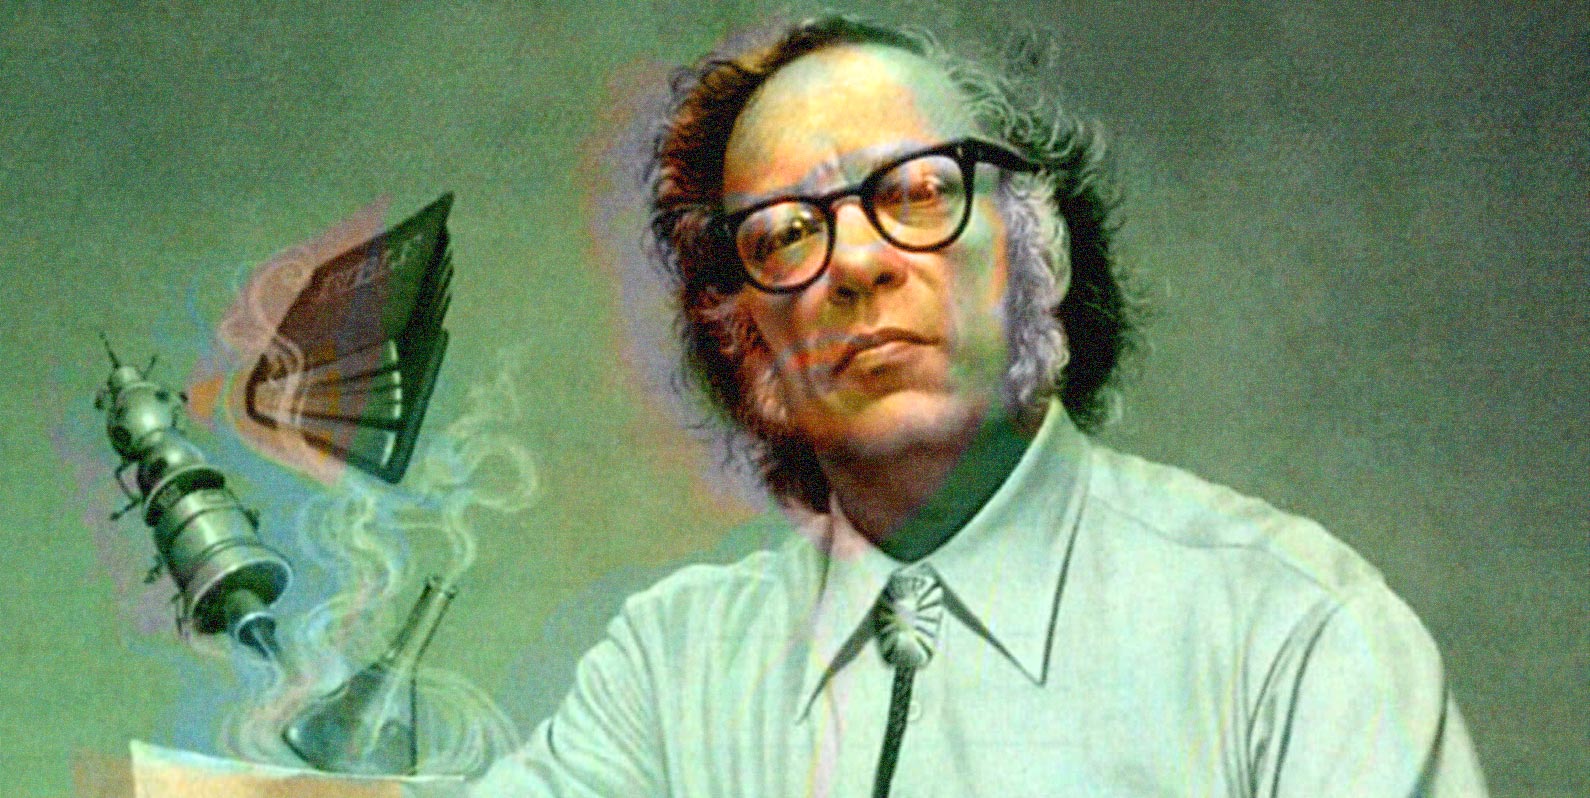 Isaac Asimov pergunta, “Como as pessoas têm novas ideias?”